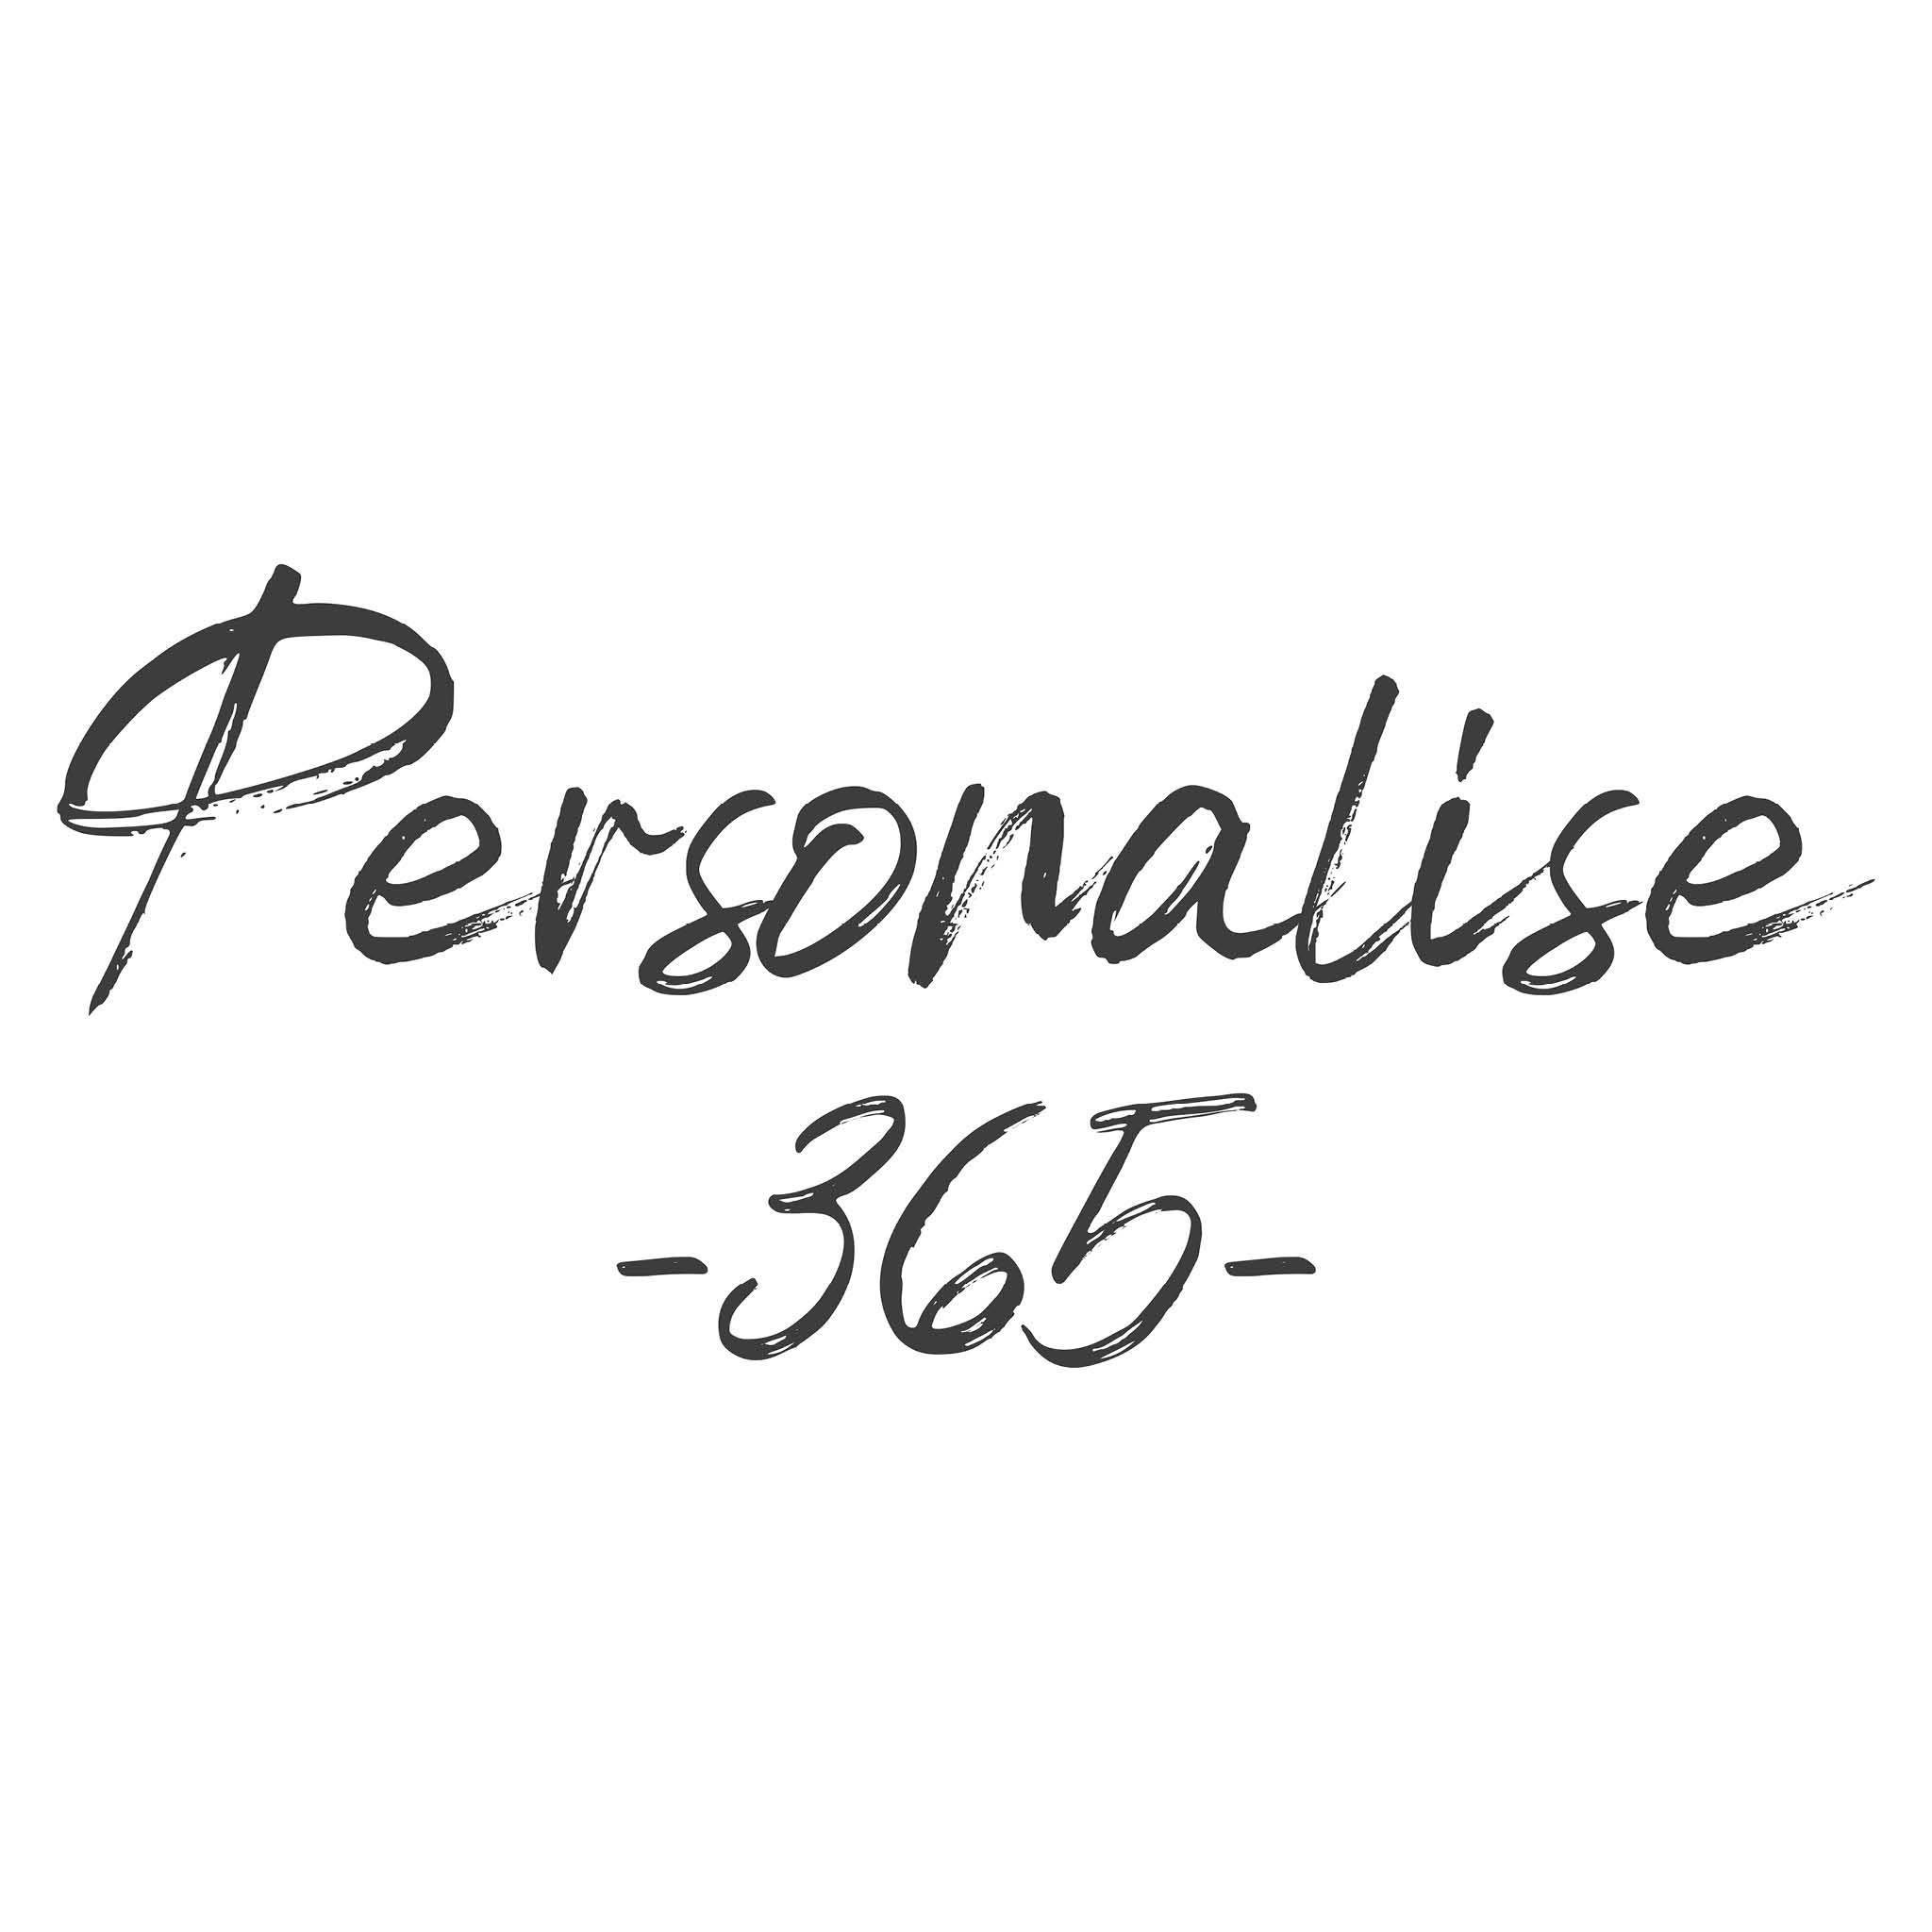 Personalise365 logo